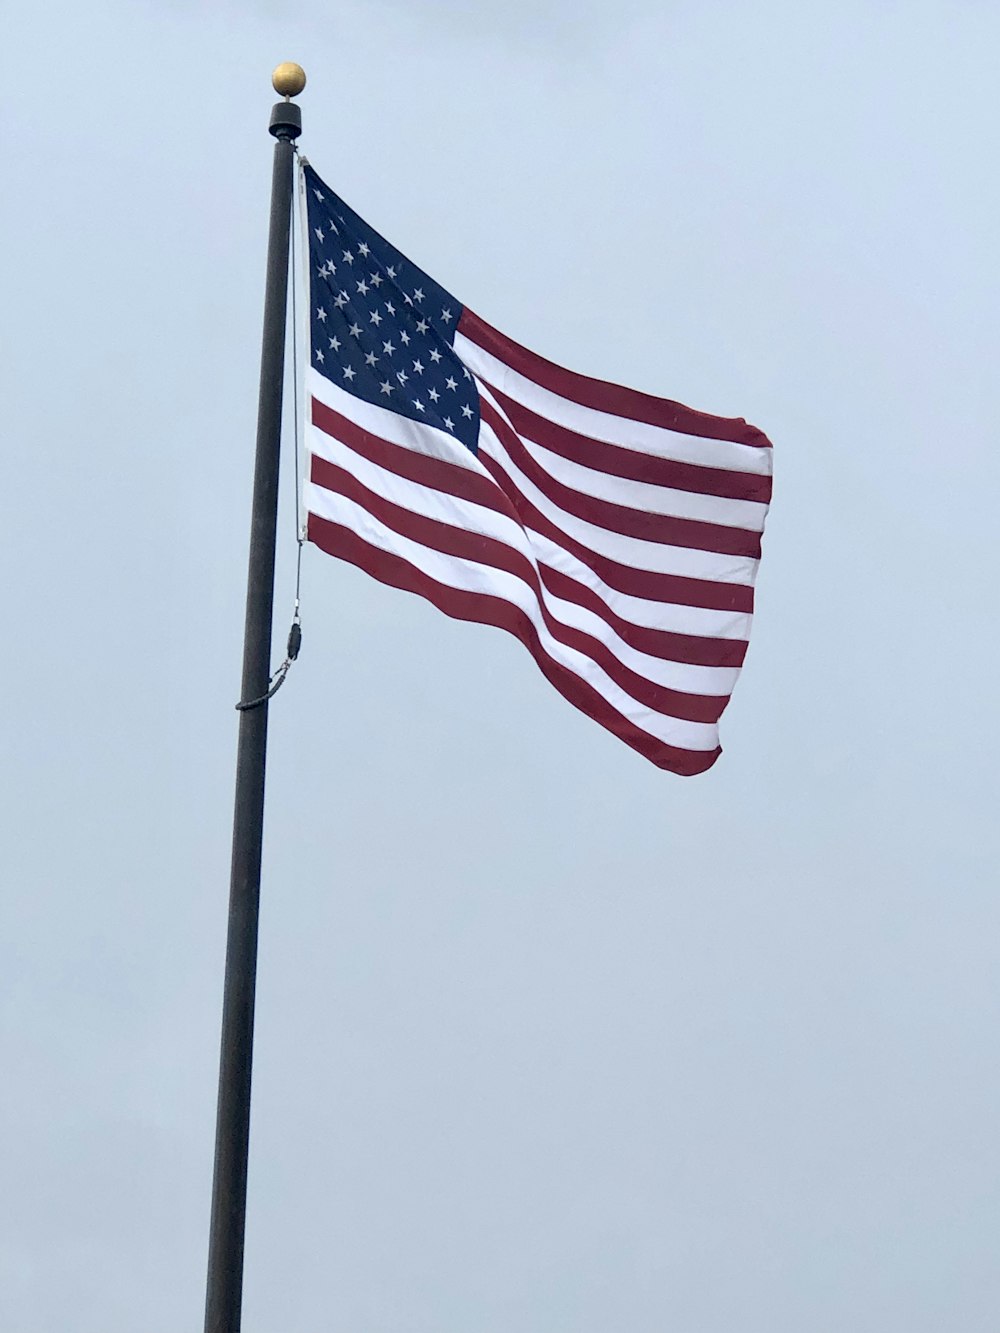 flag of America on pole